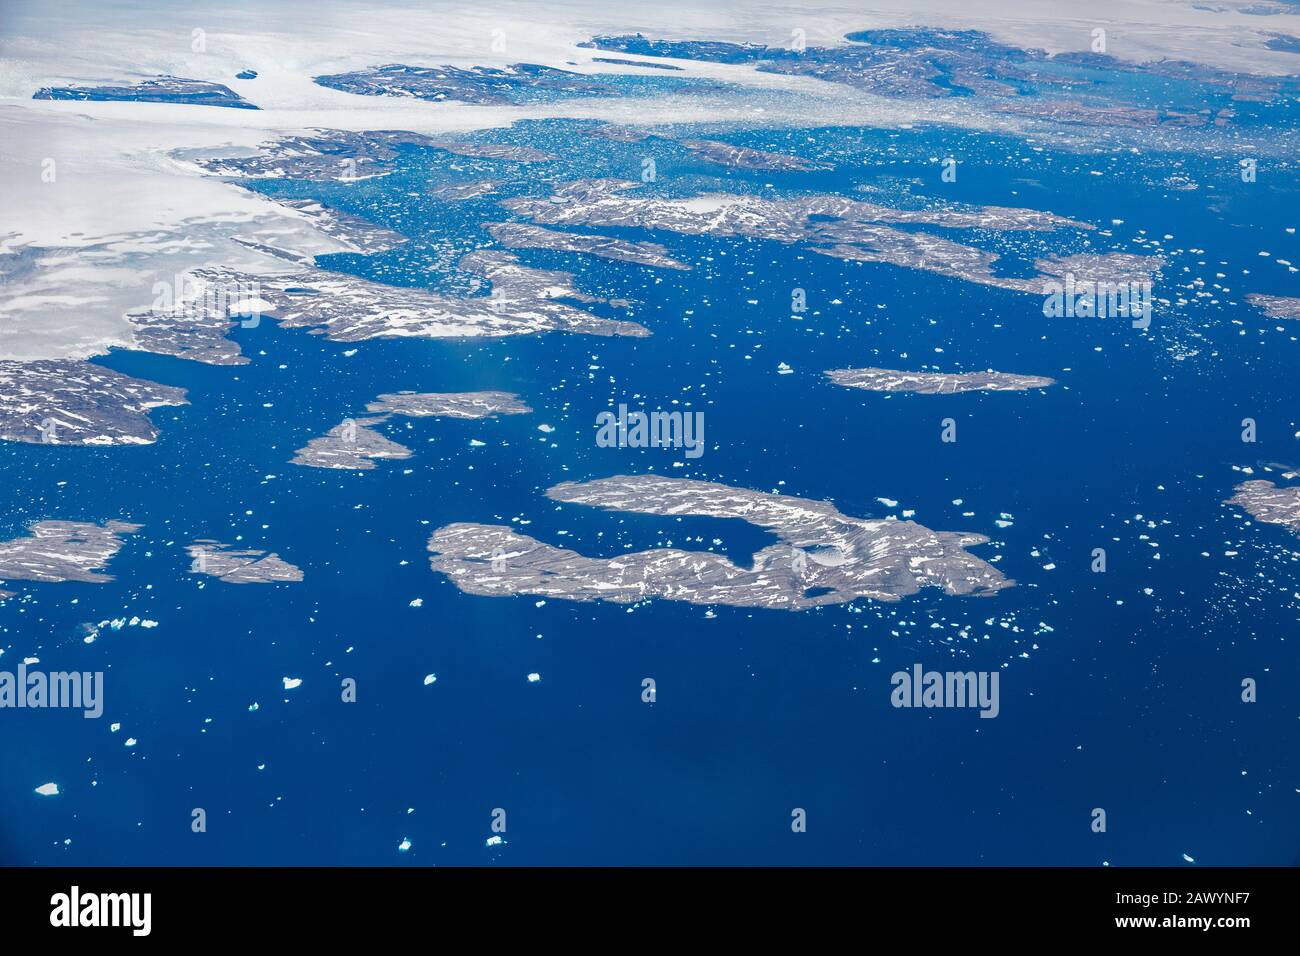 Vue aérienne fonte de la calotte glaciaire polaire Groenland Banque D'Images